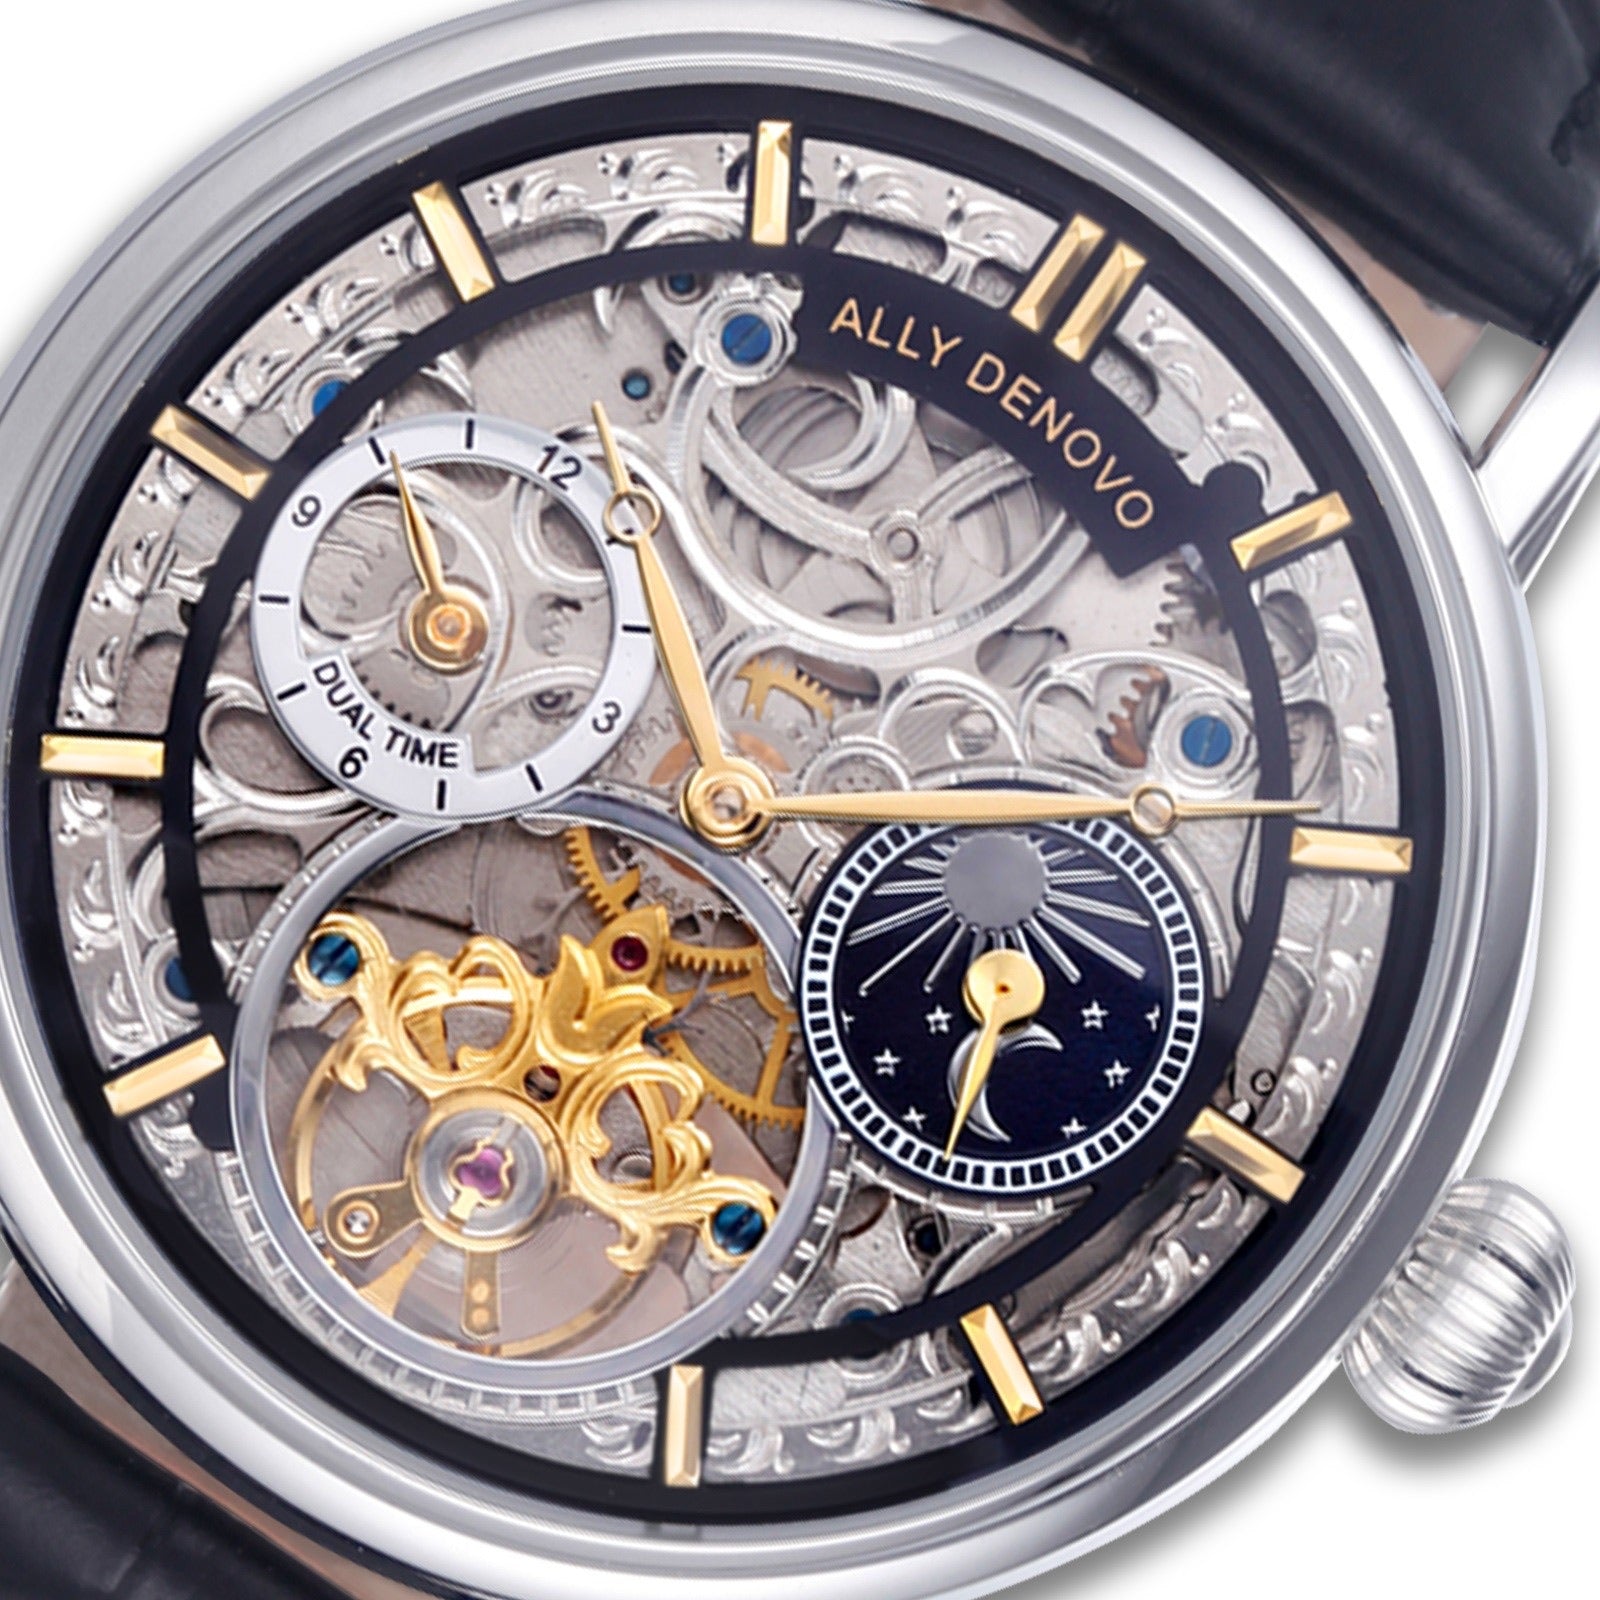 極光藝術星晨機械錶－銀框黑鱷魚紋皮帶